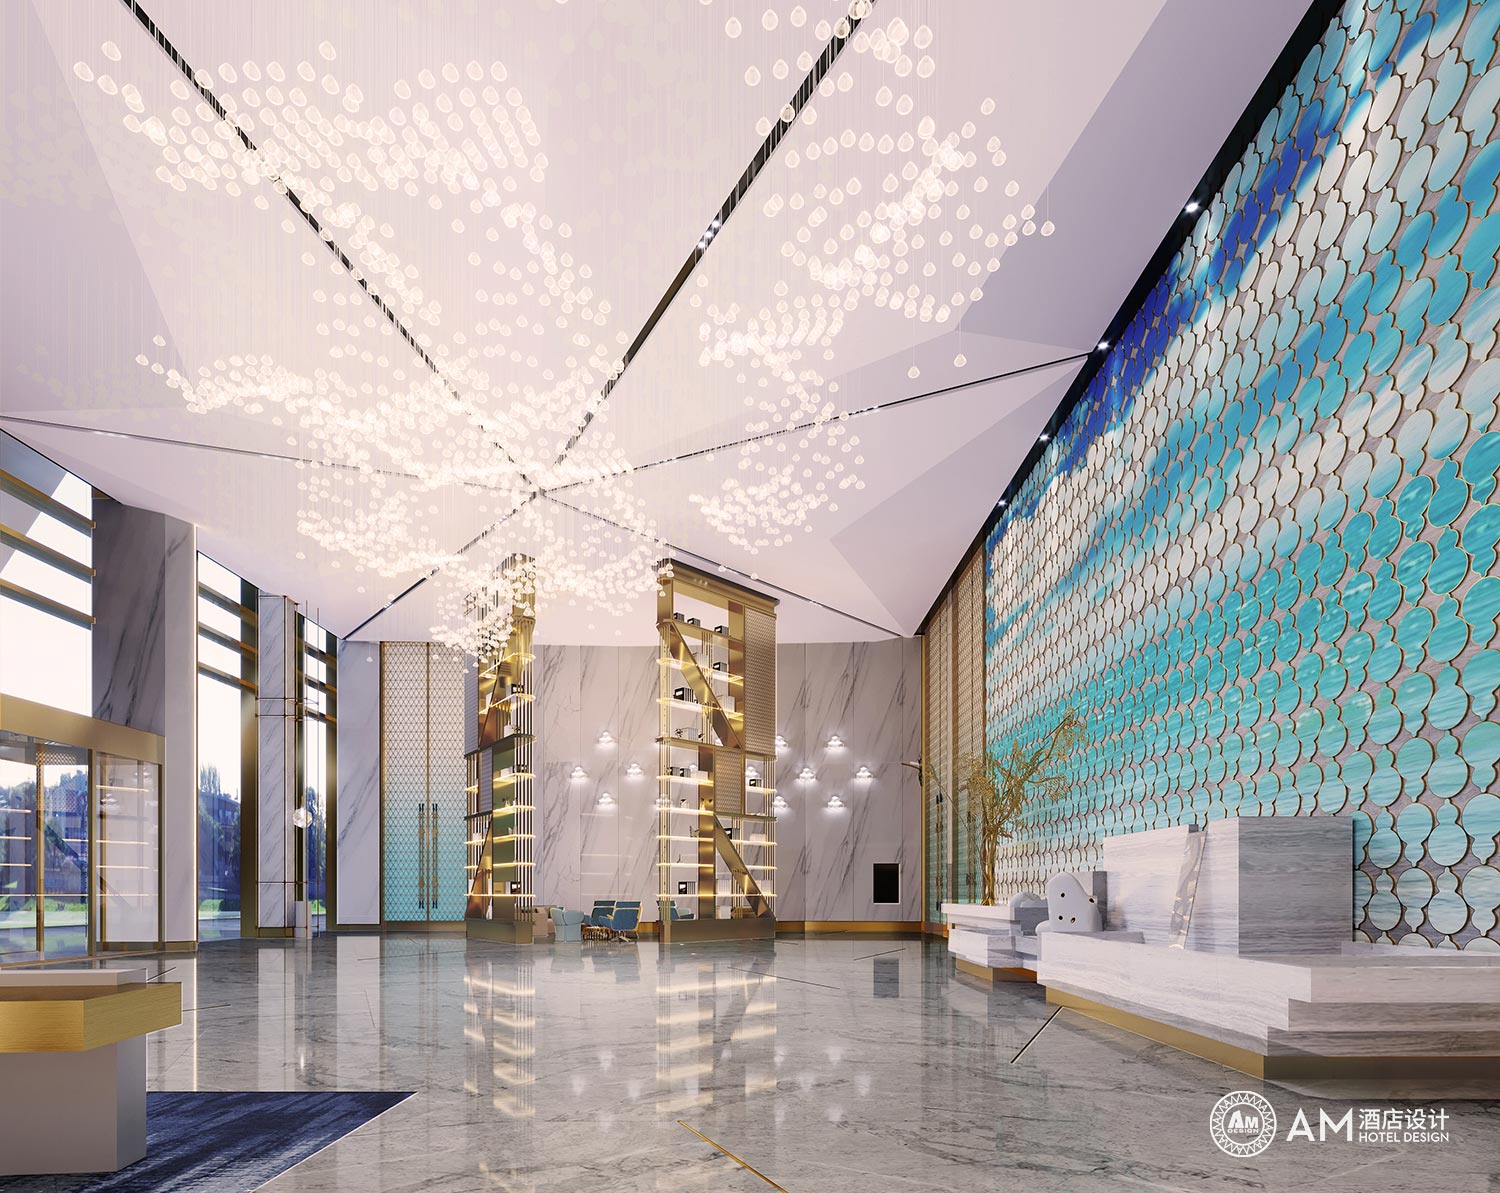 AM DESIGN | Lobby design of Liaoning Baida Wanmei Hotel